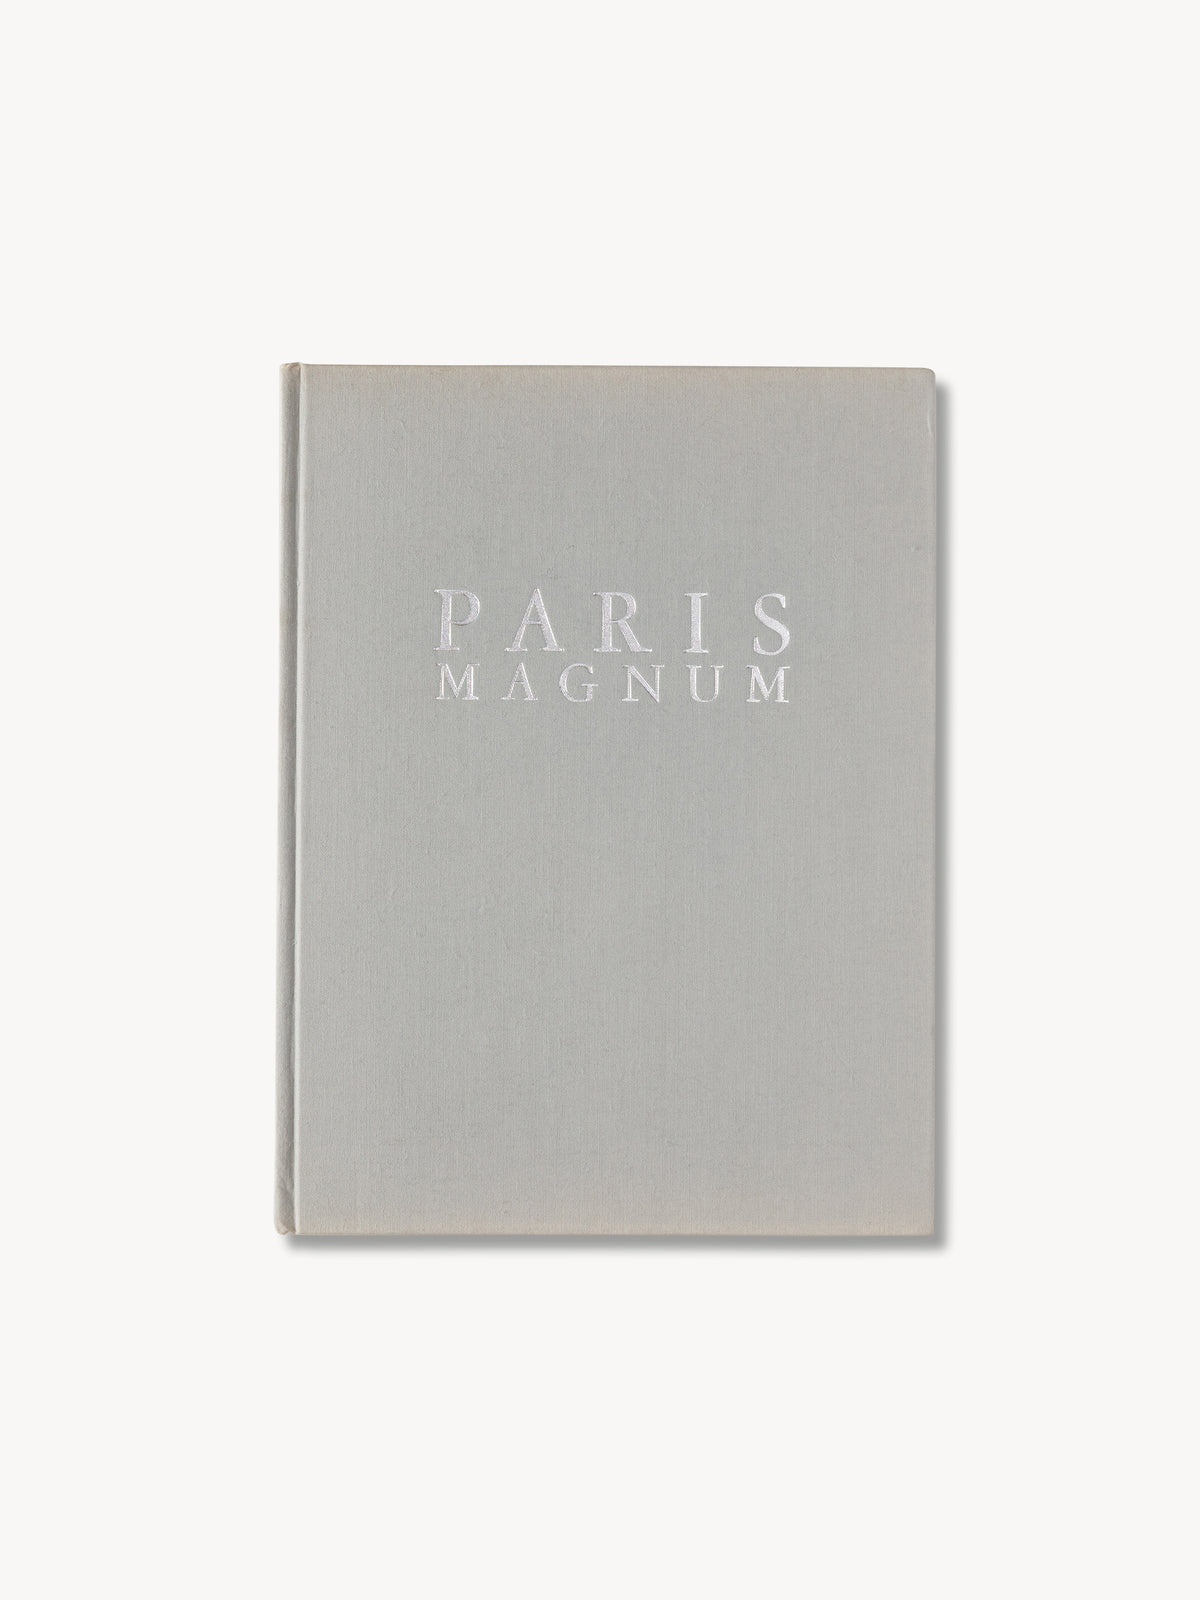 Paris Magnum - 0127 - Product flat